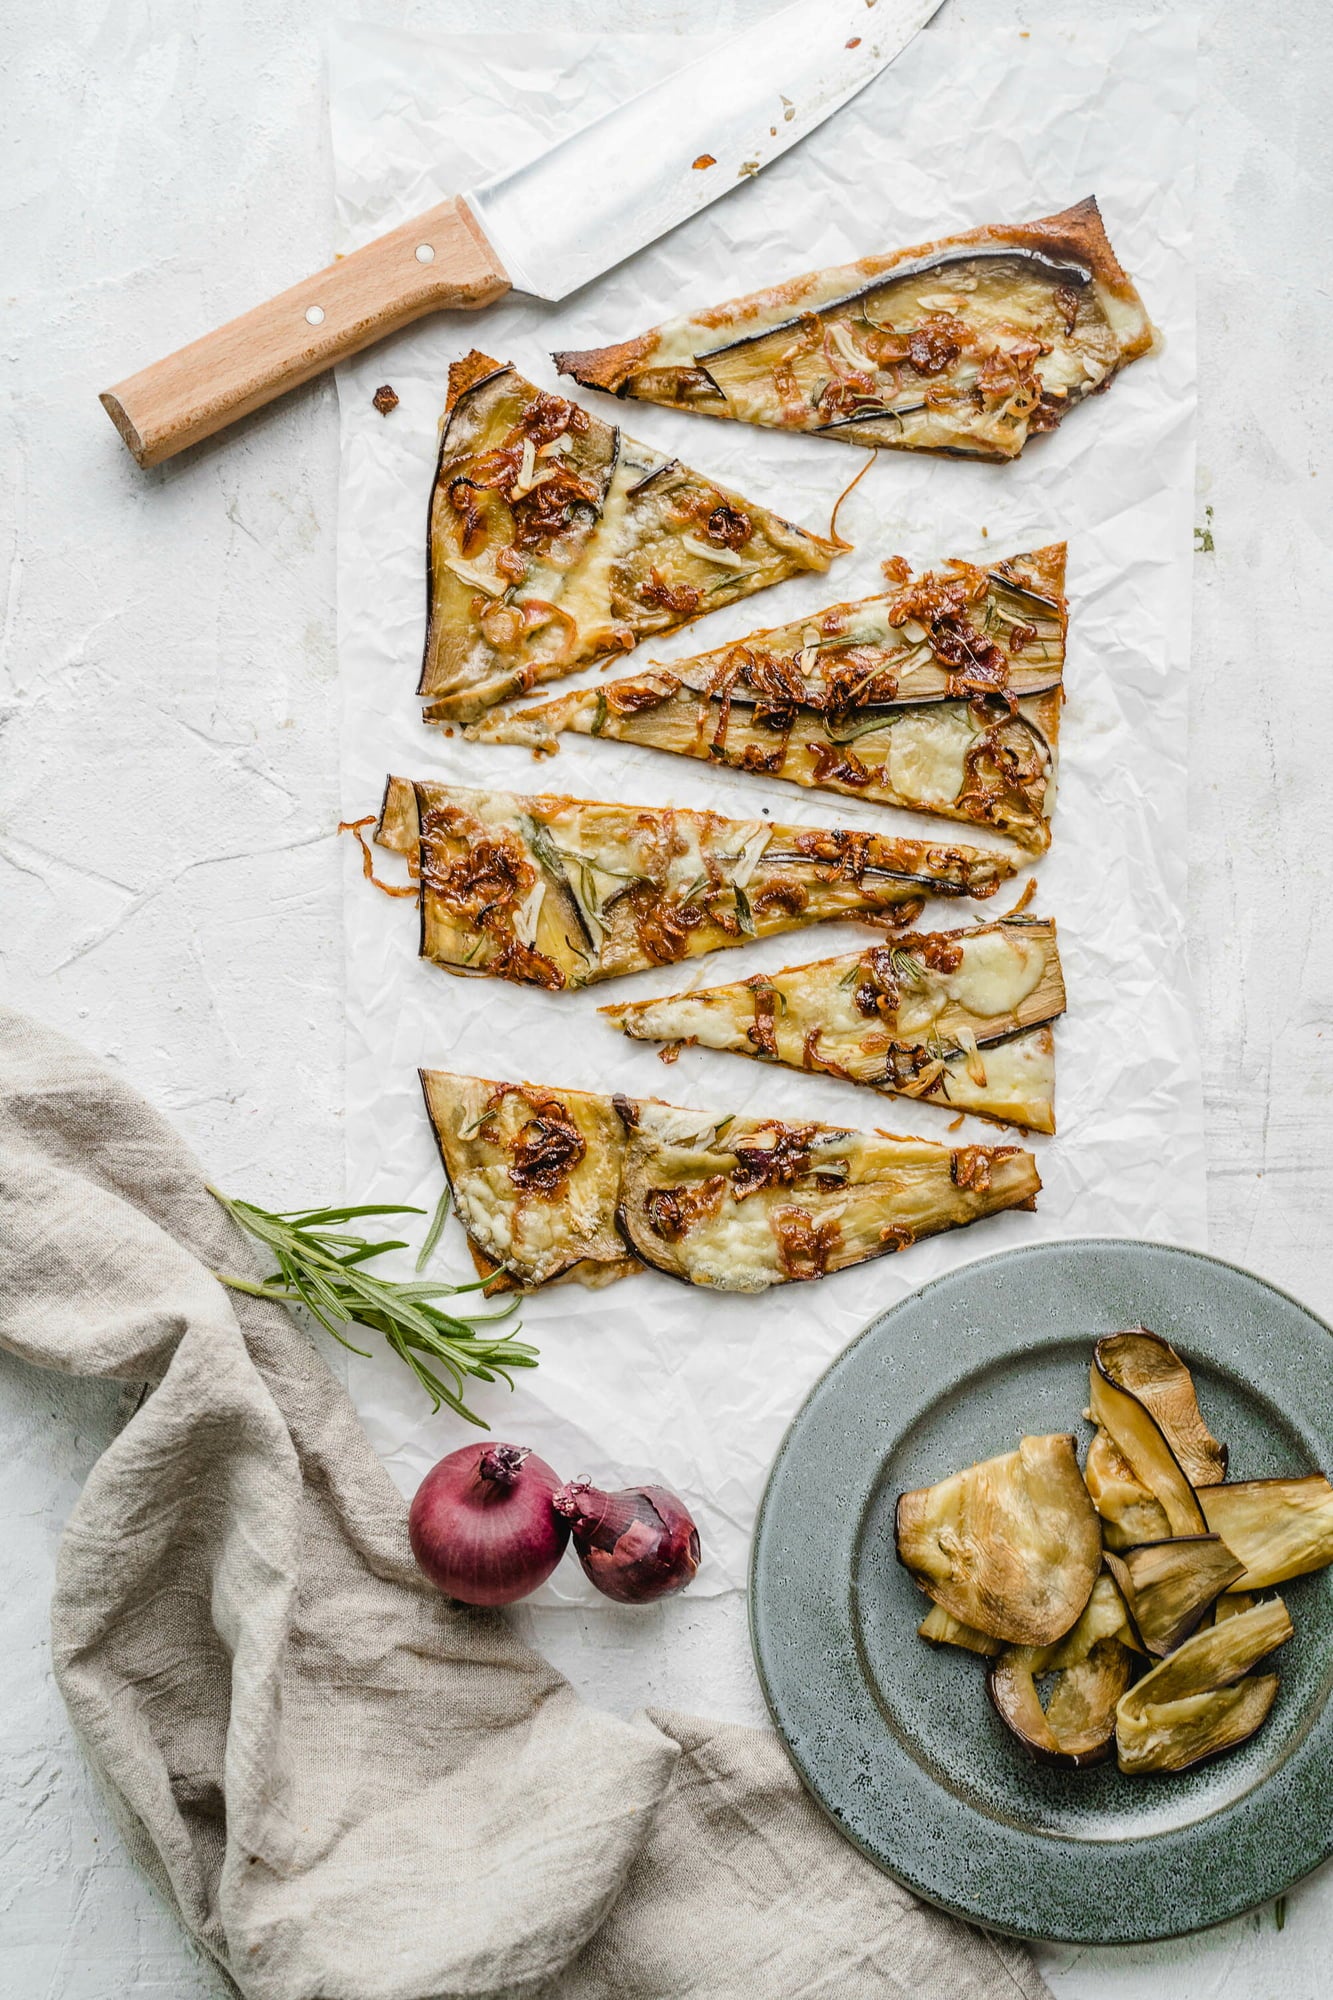 Serviervorschlag eines belegten veganen Pizzabodens von oben fotografiert. Aufgeschnittene Pizza, ein Messer, Rosmarin, Zwiebel und ein Teller mit Pizzastücken ist zu sehen.